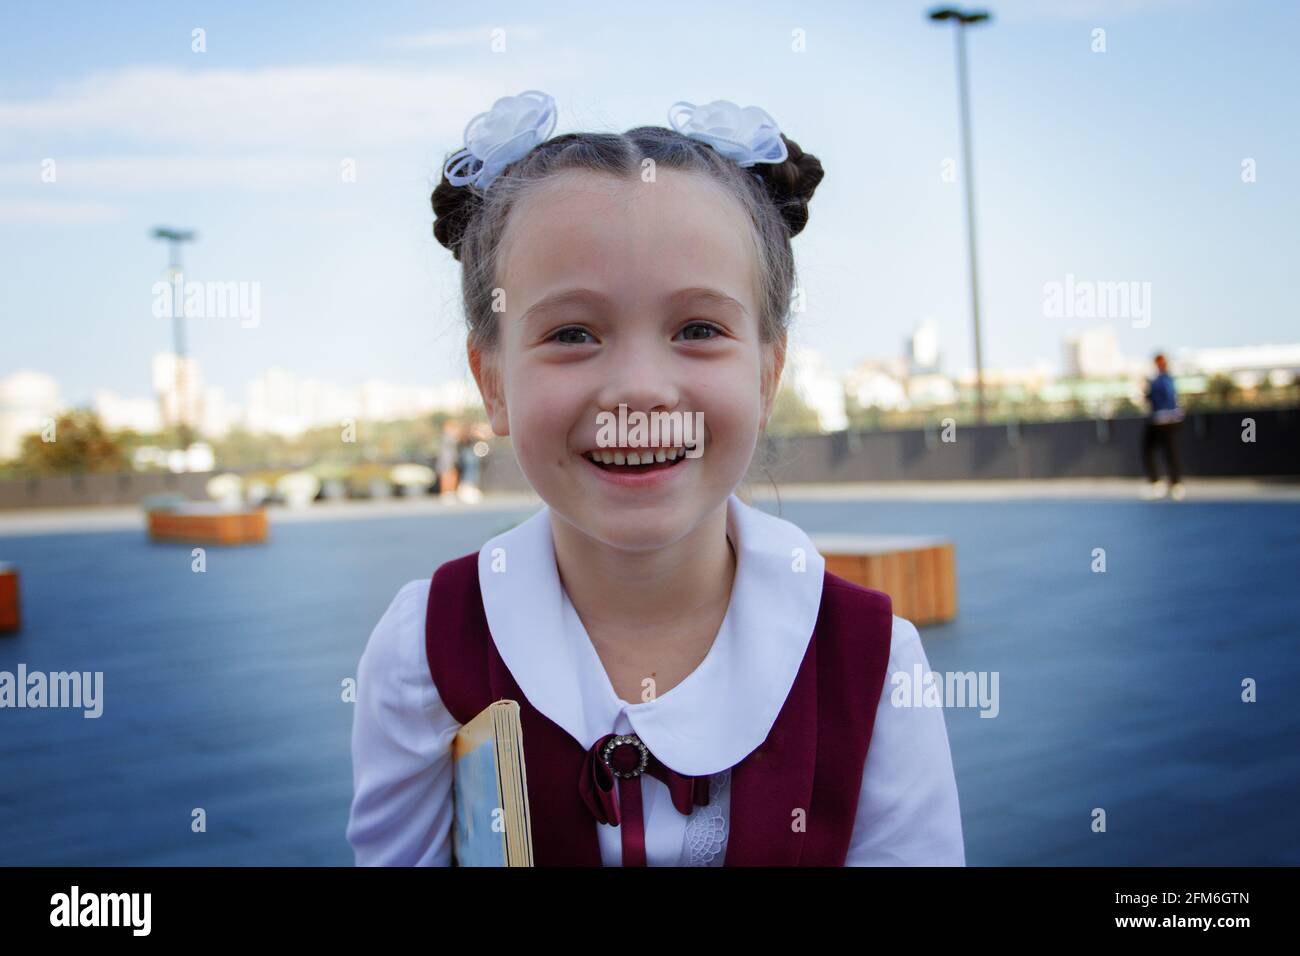 Primo piano ritratto di adorabile bambina che indossa una divisa elegante, sorridente e ridente all'aperto. Concetto di ritorno a scuola. Foto Stock